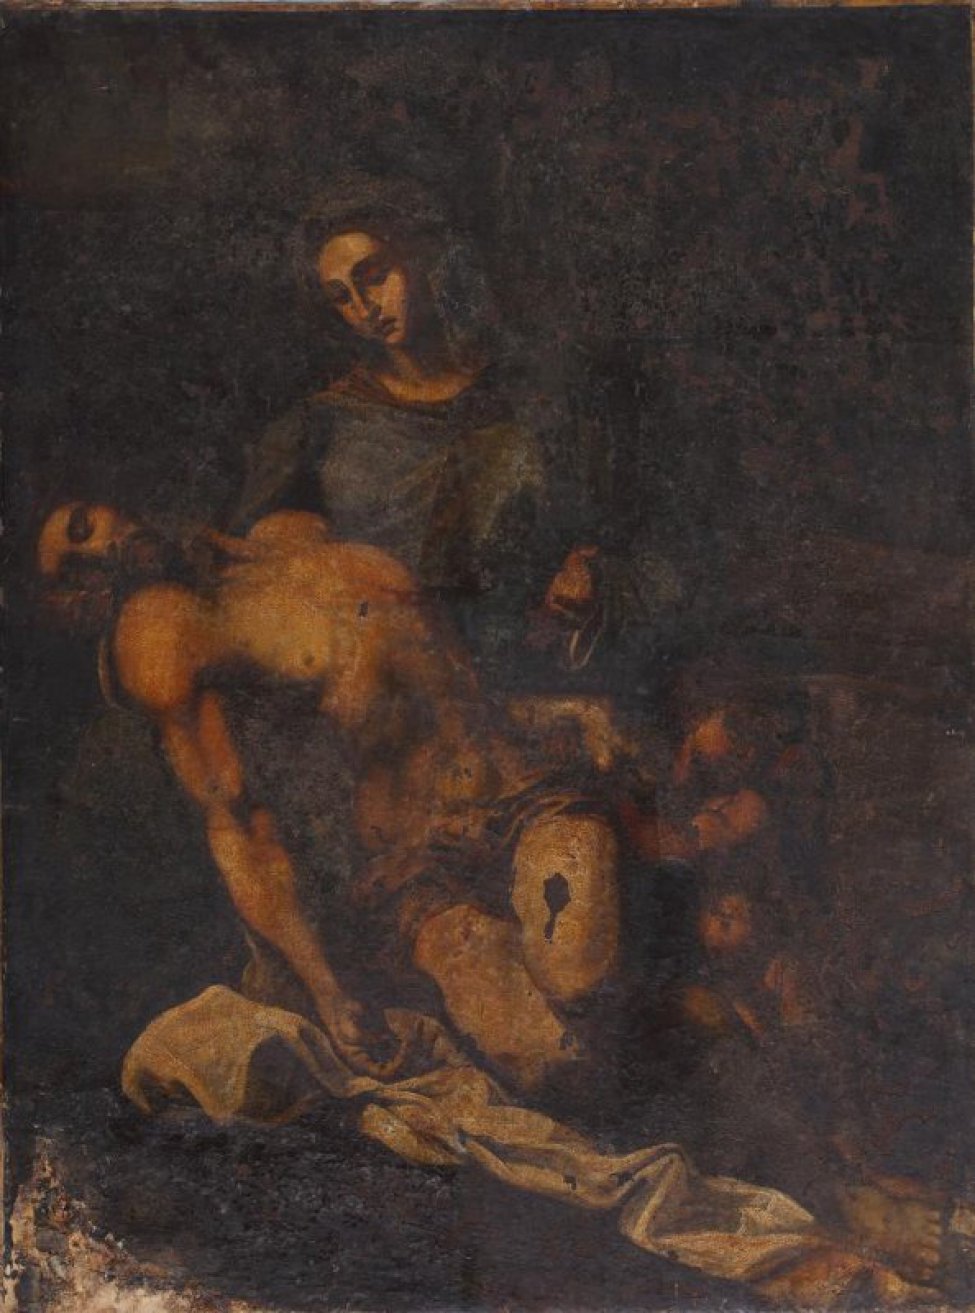 Изображена на темном фоне Богоматерь поддерживающая правой рукою голову безжизненно склонившегося Христа; левую руку его держит ребенок. На земле лежат пелены.